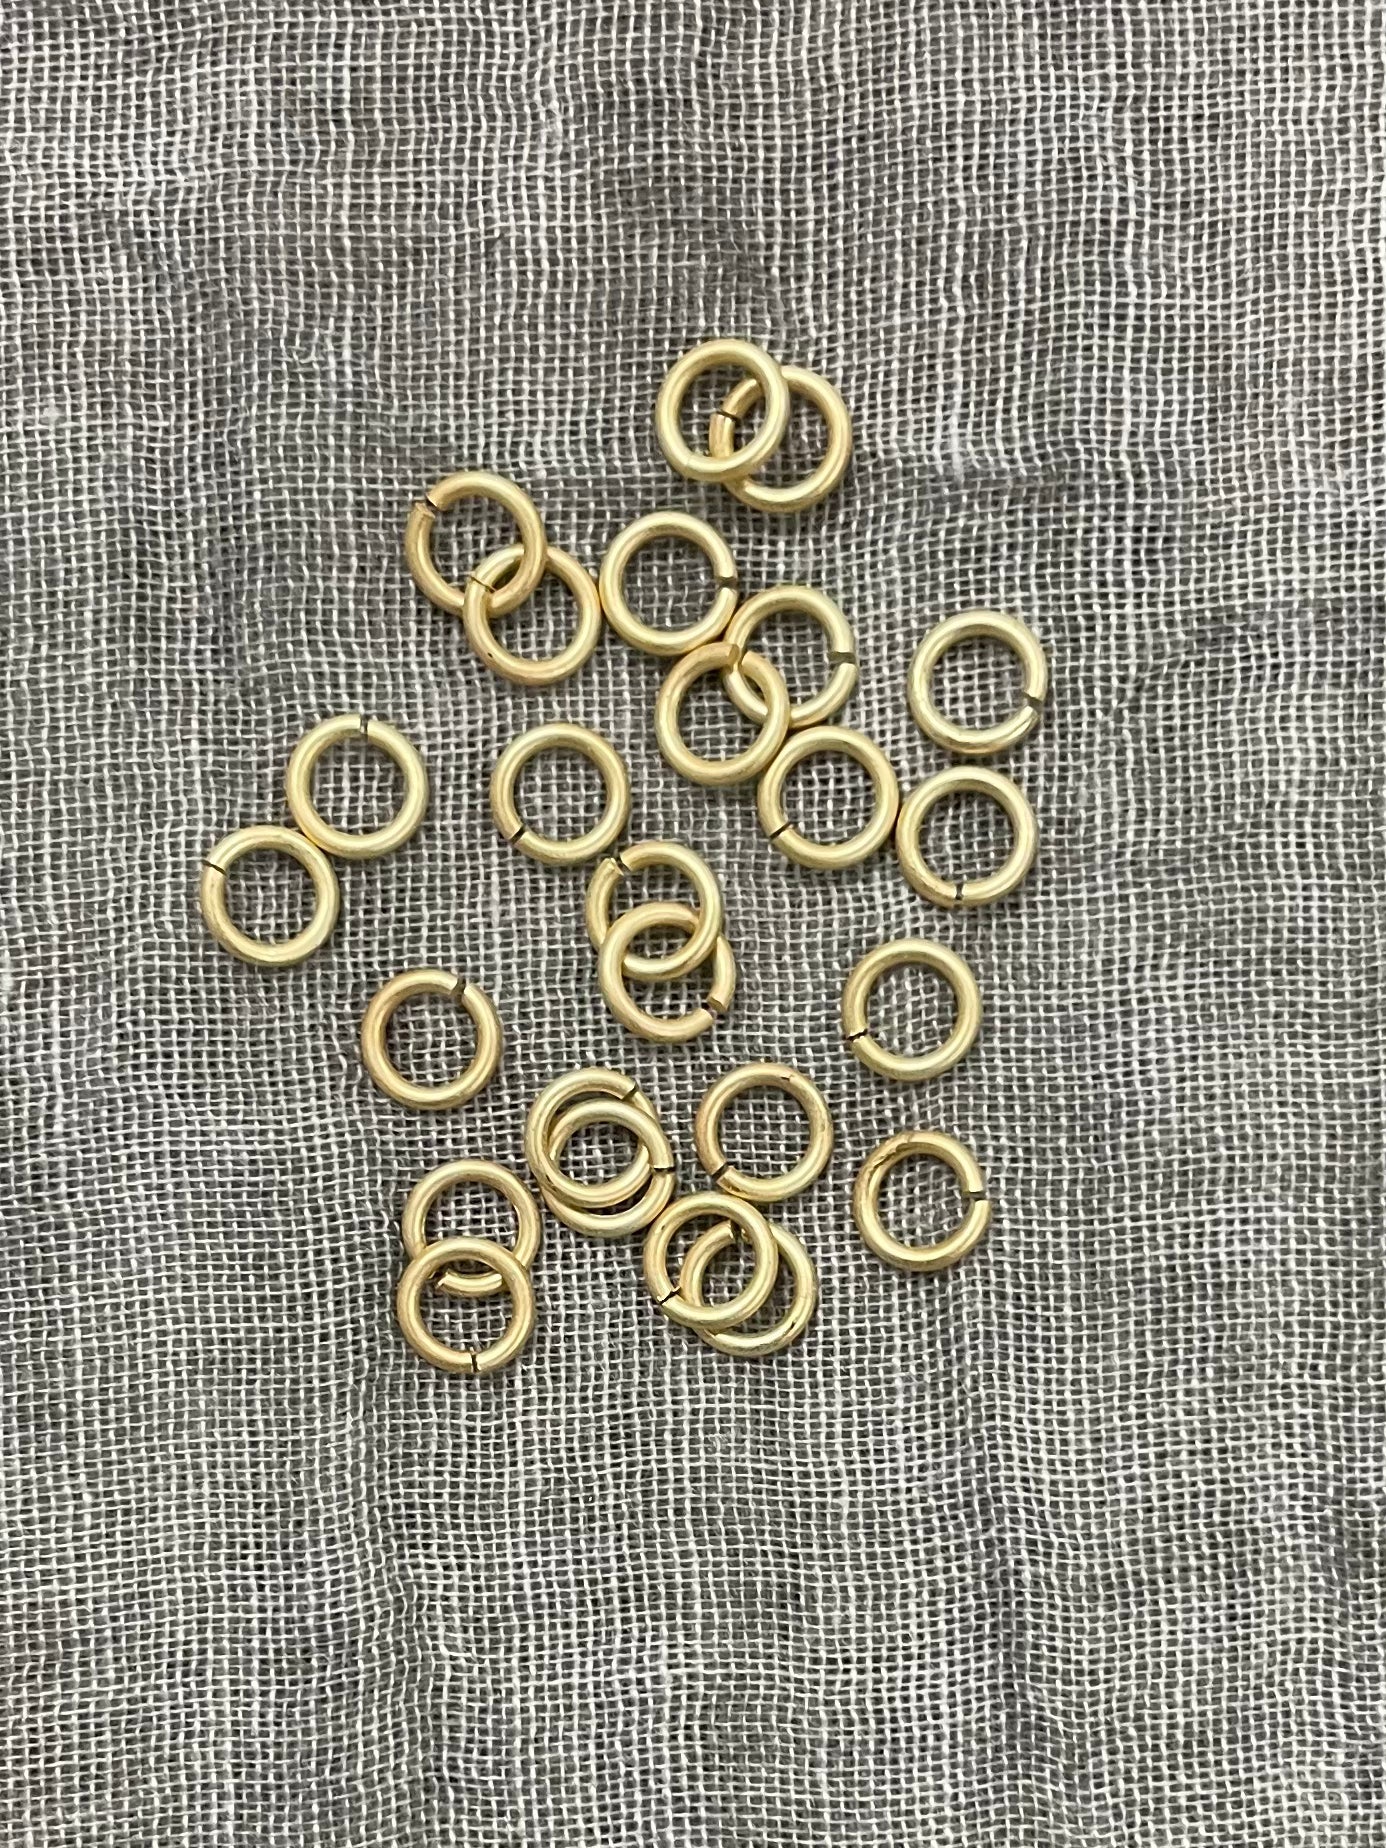 6 mm Open Jump Ring: 18 Gauge, Matte Gold, 24 pieces